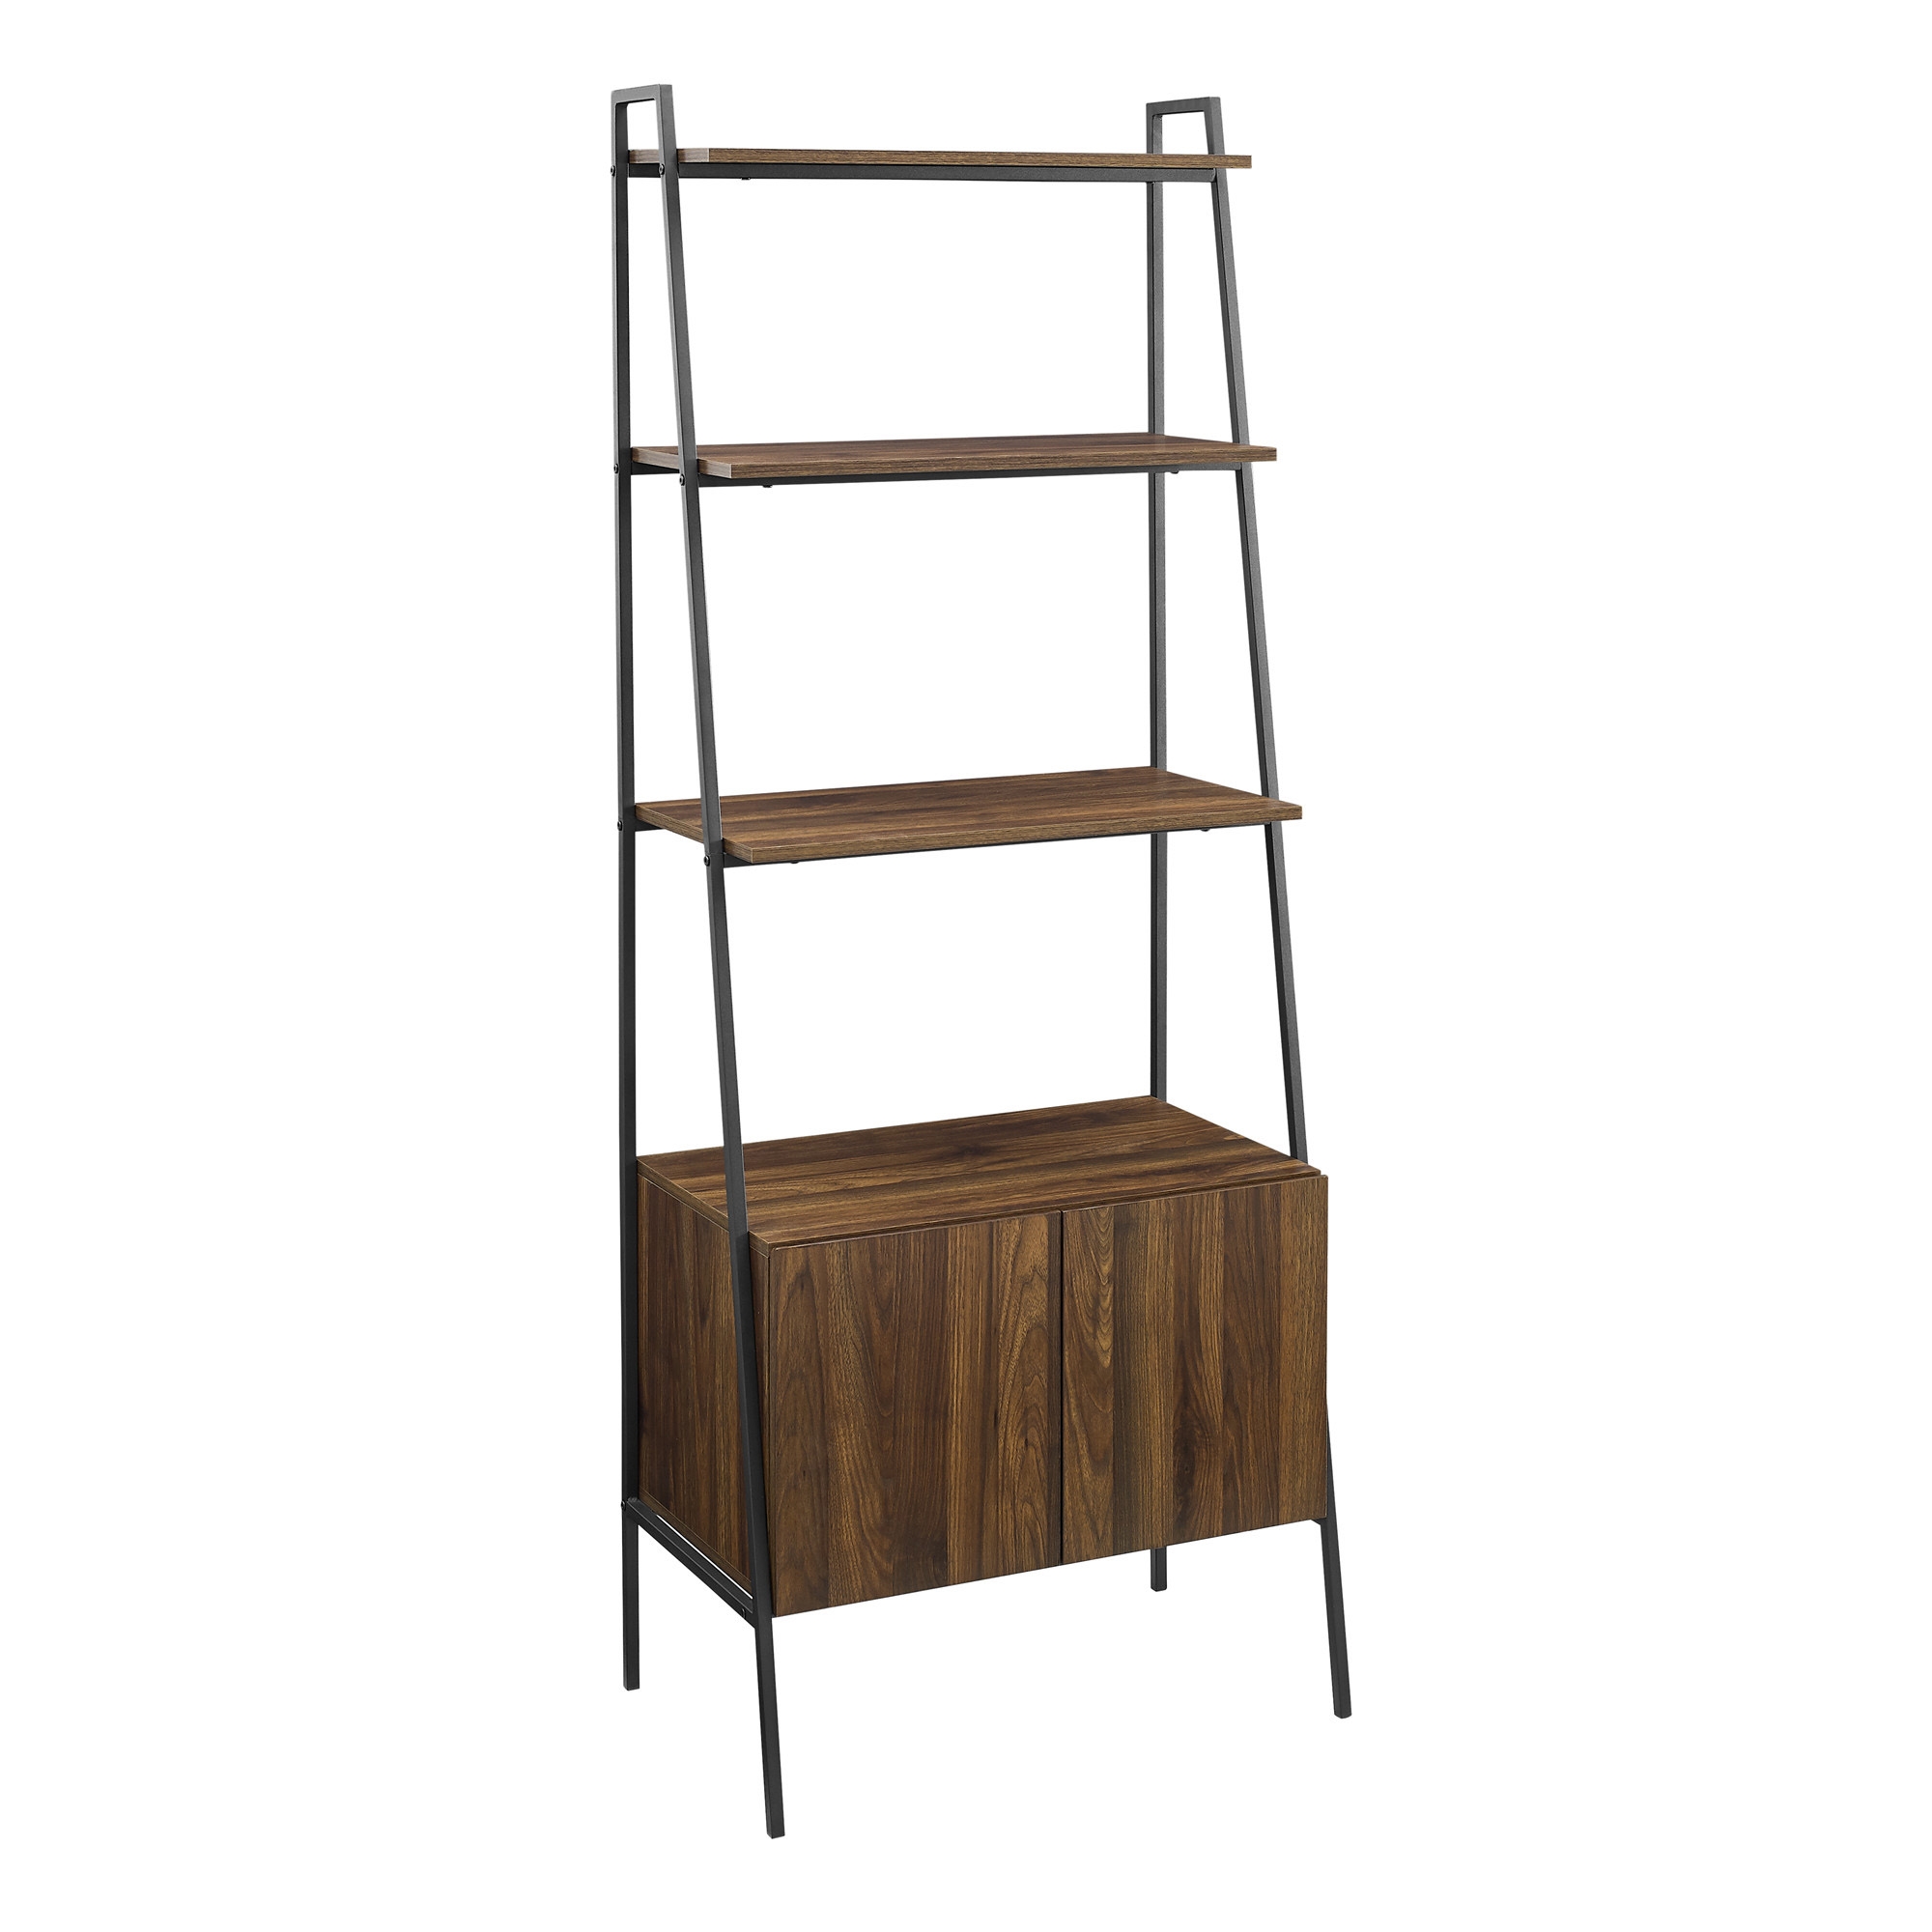 72" Industrial Wood Ladder Bookcase - Dark Walnut - Image 1